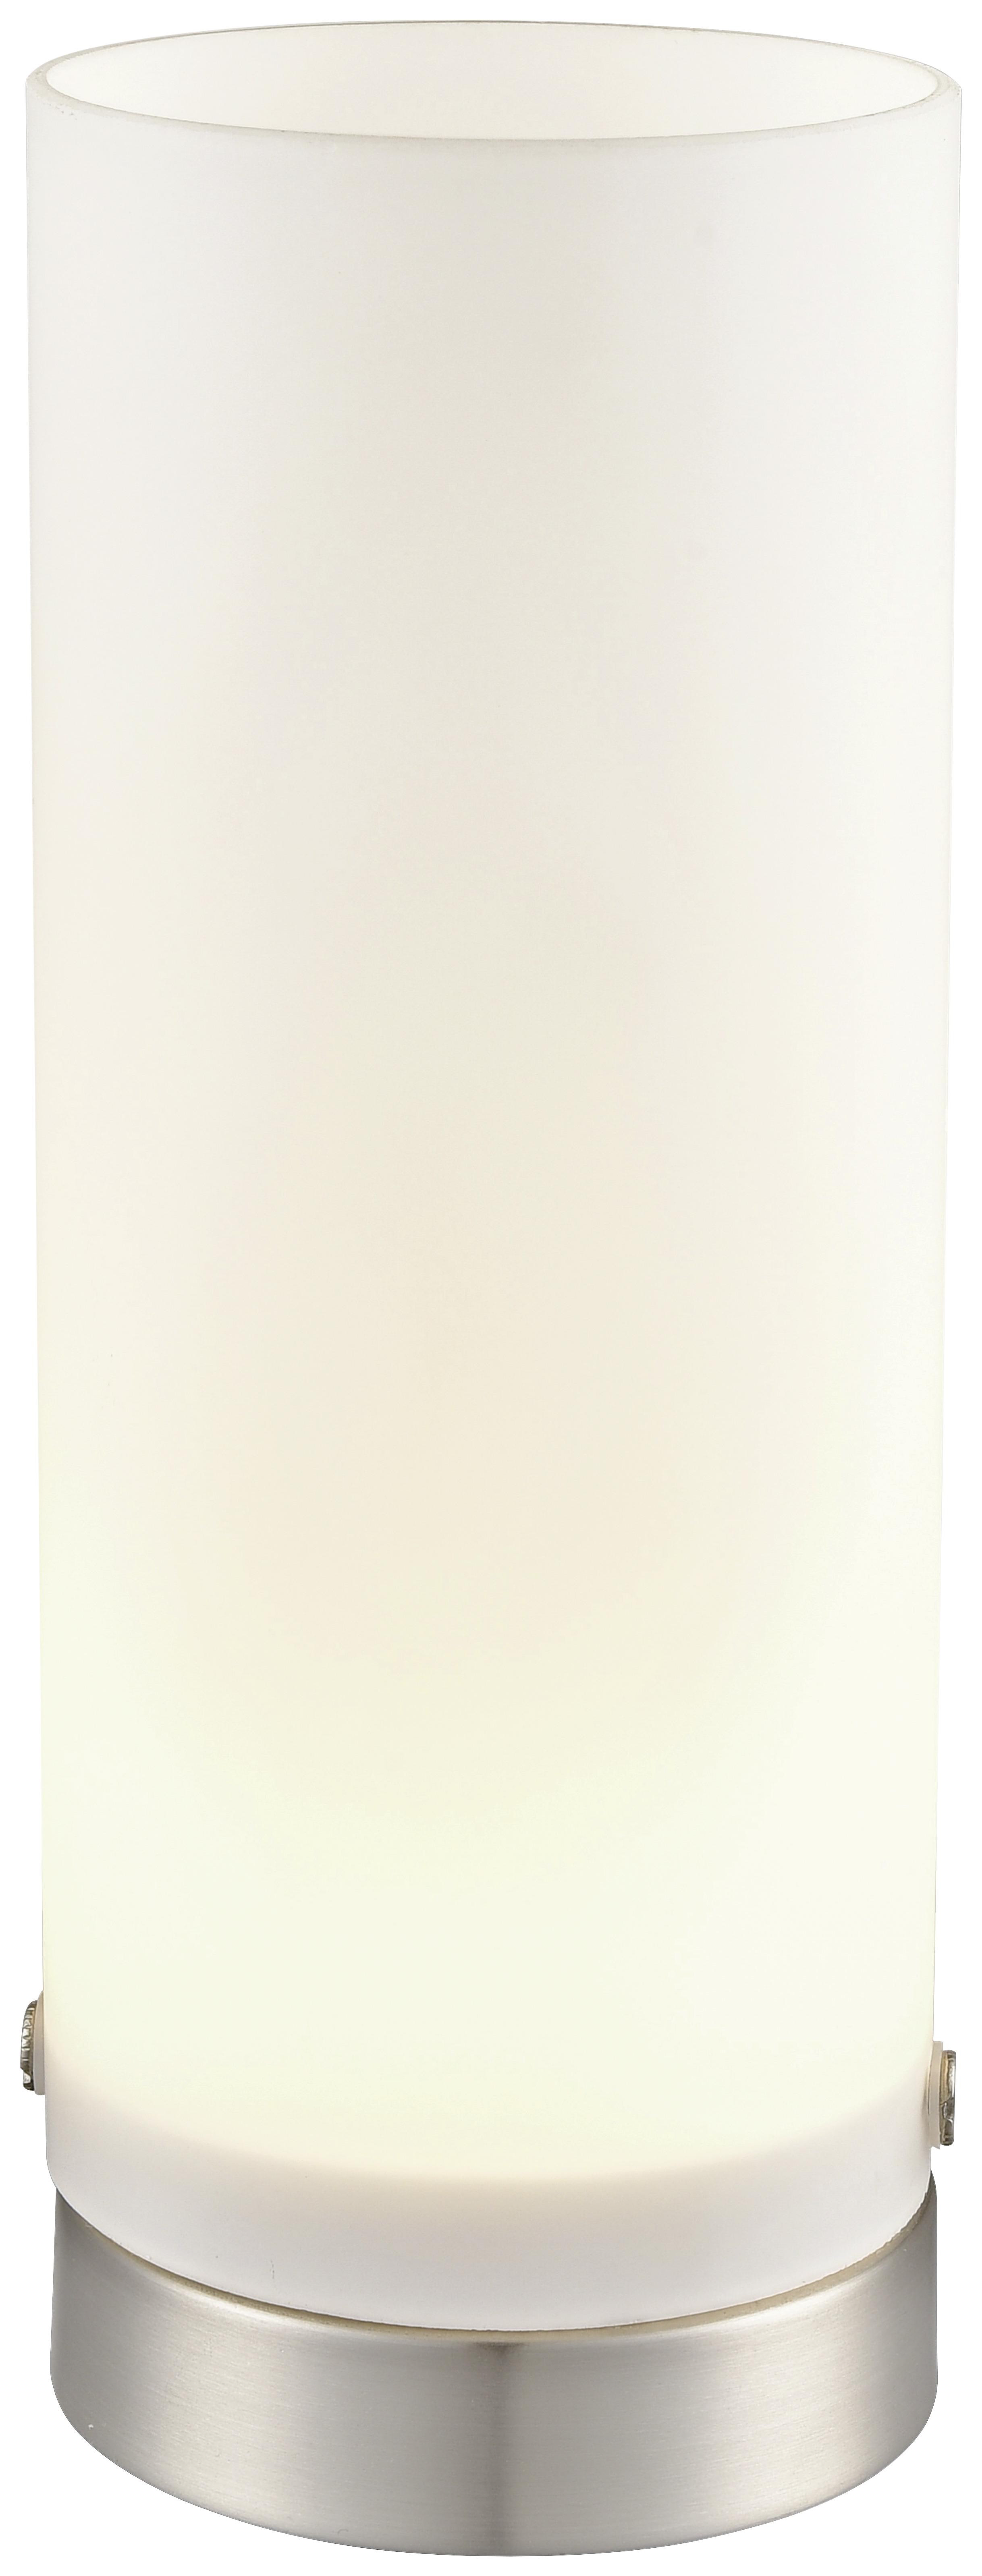 Led Tischlampe Simone Dimmbar Silber/Weiß mit Touchdimmer - Silberfarben/Weiß, ROMANTIK / LANDHAUS, Glas/Metall (8/21cm) - James Wood